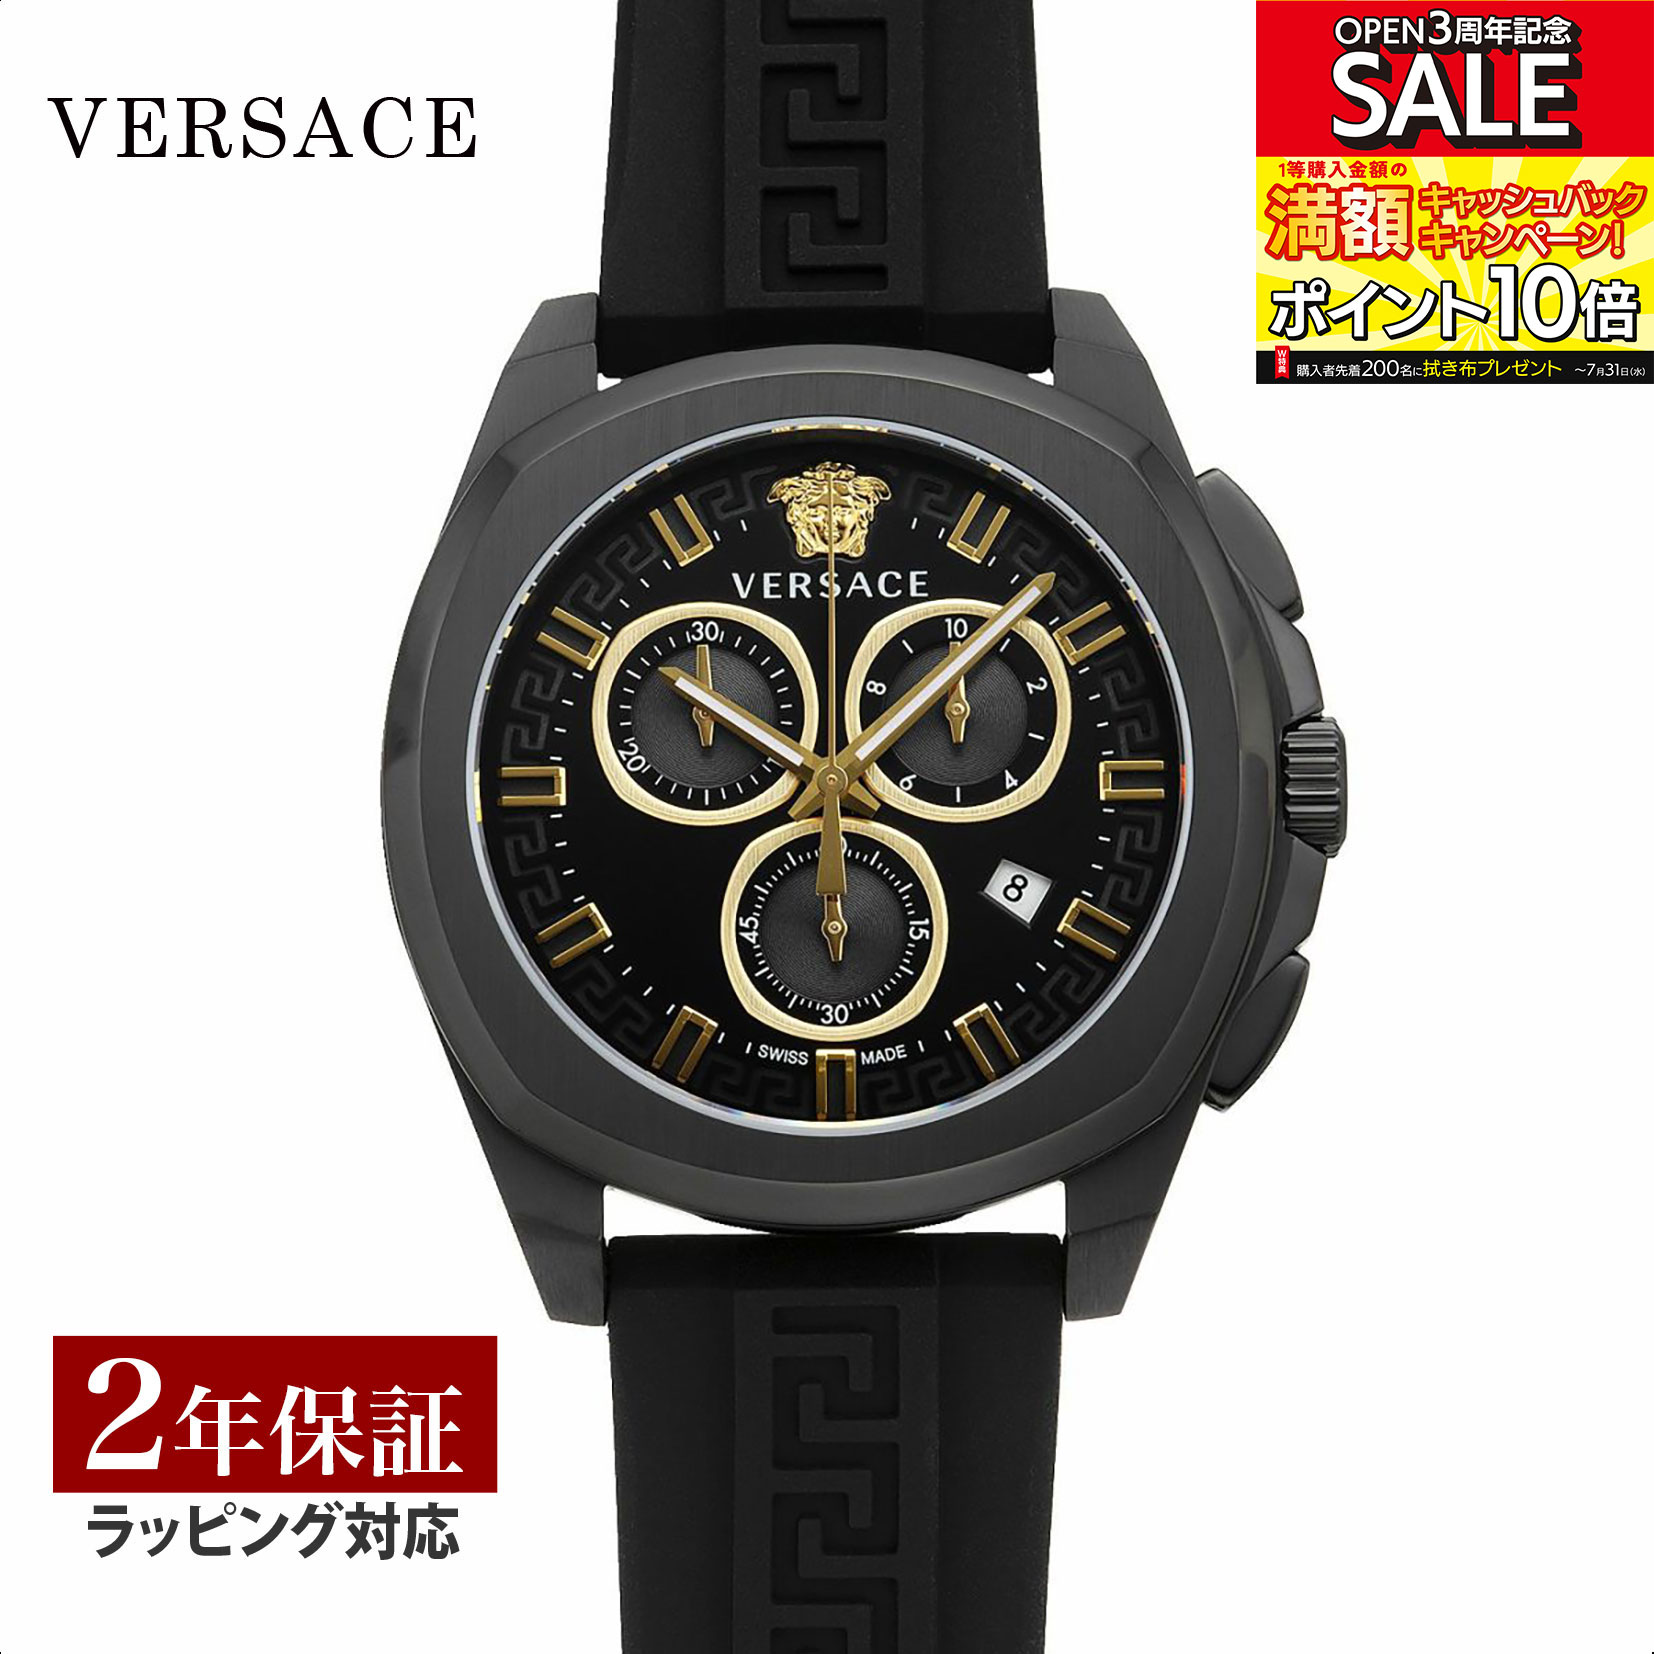 VERSACE ヴェルサーチェ Geo Chrono クォーツ メンズ ブラック VE7CA0523 時計 腕時計 高級腕時計 ブラ..